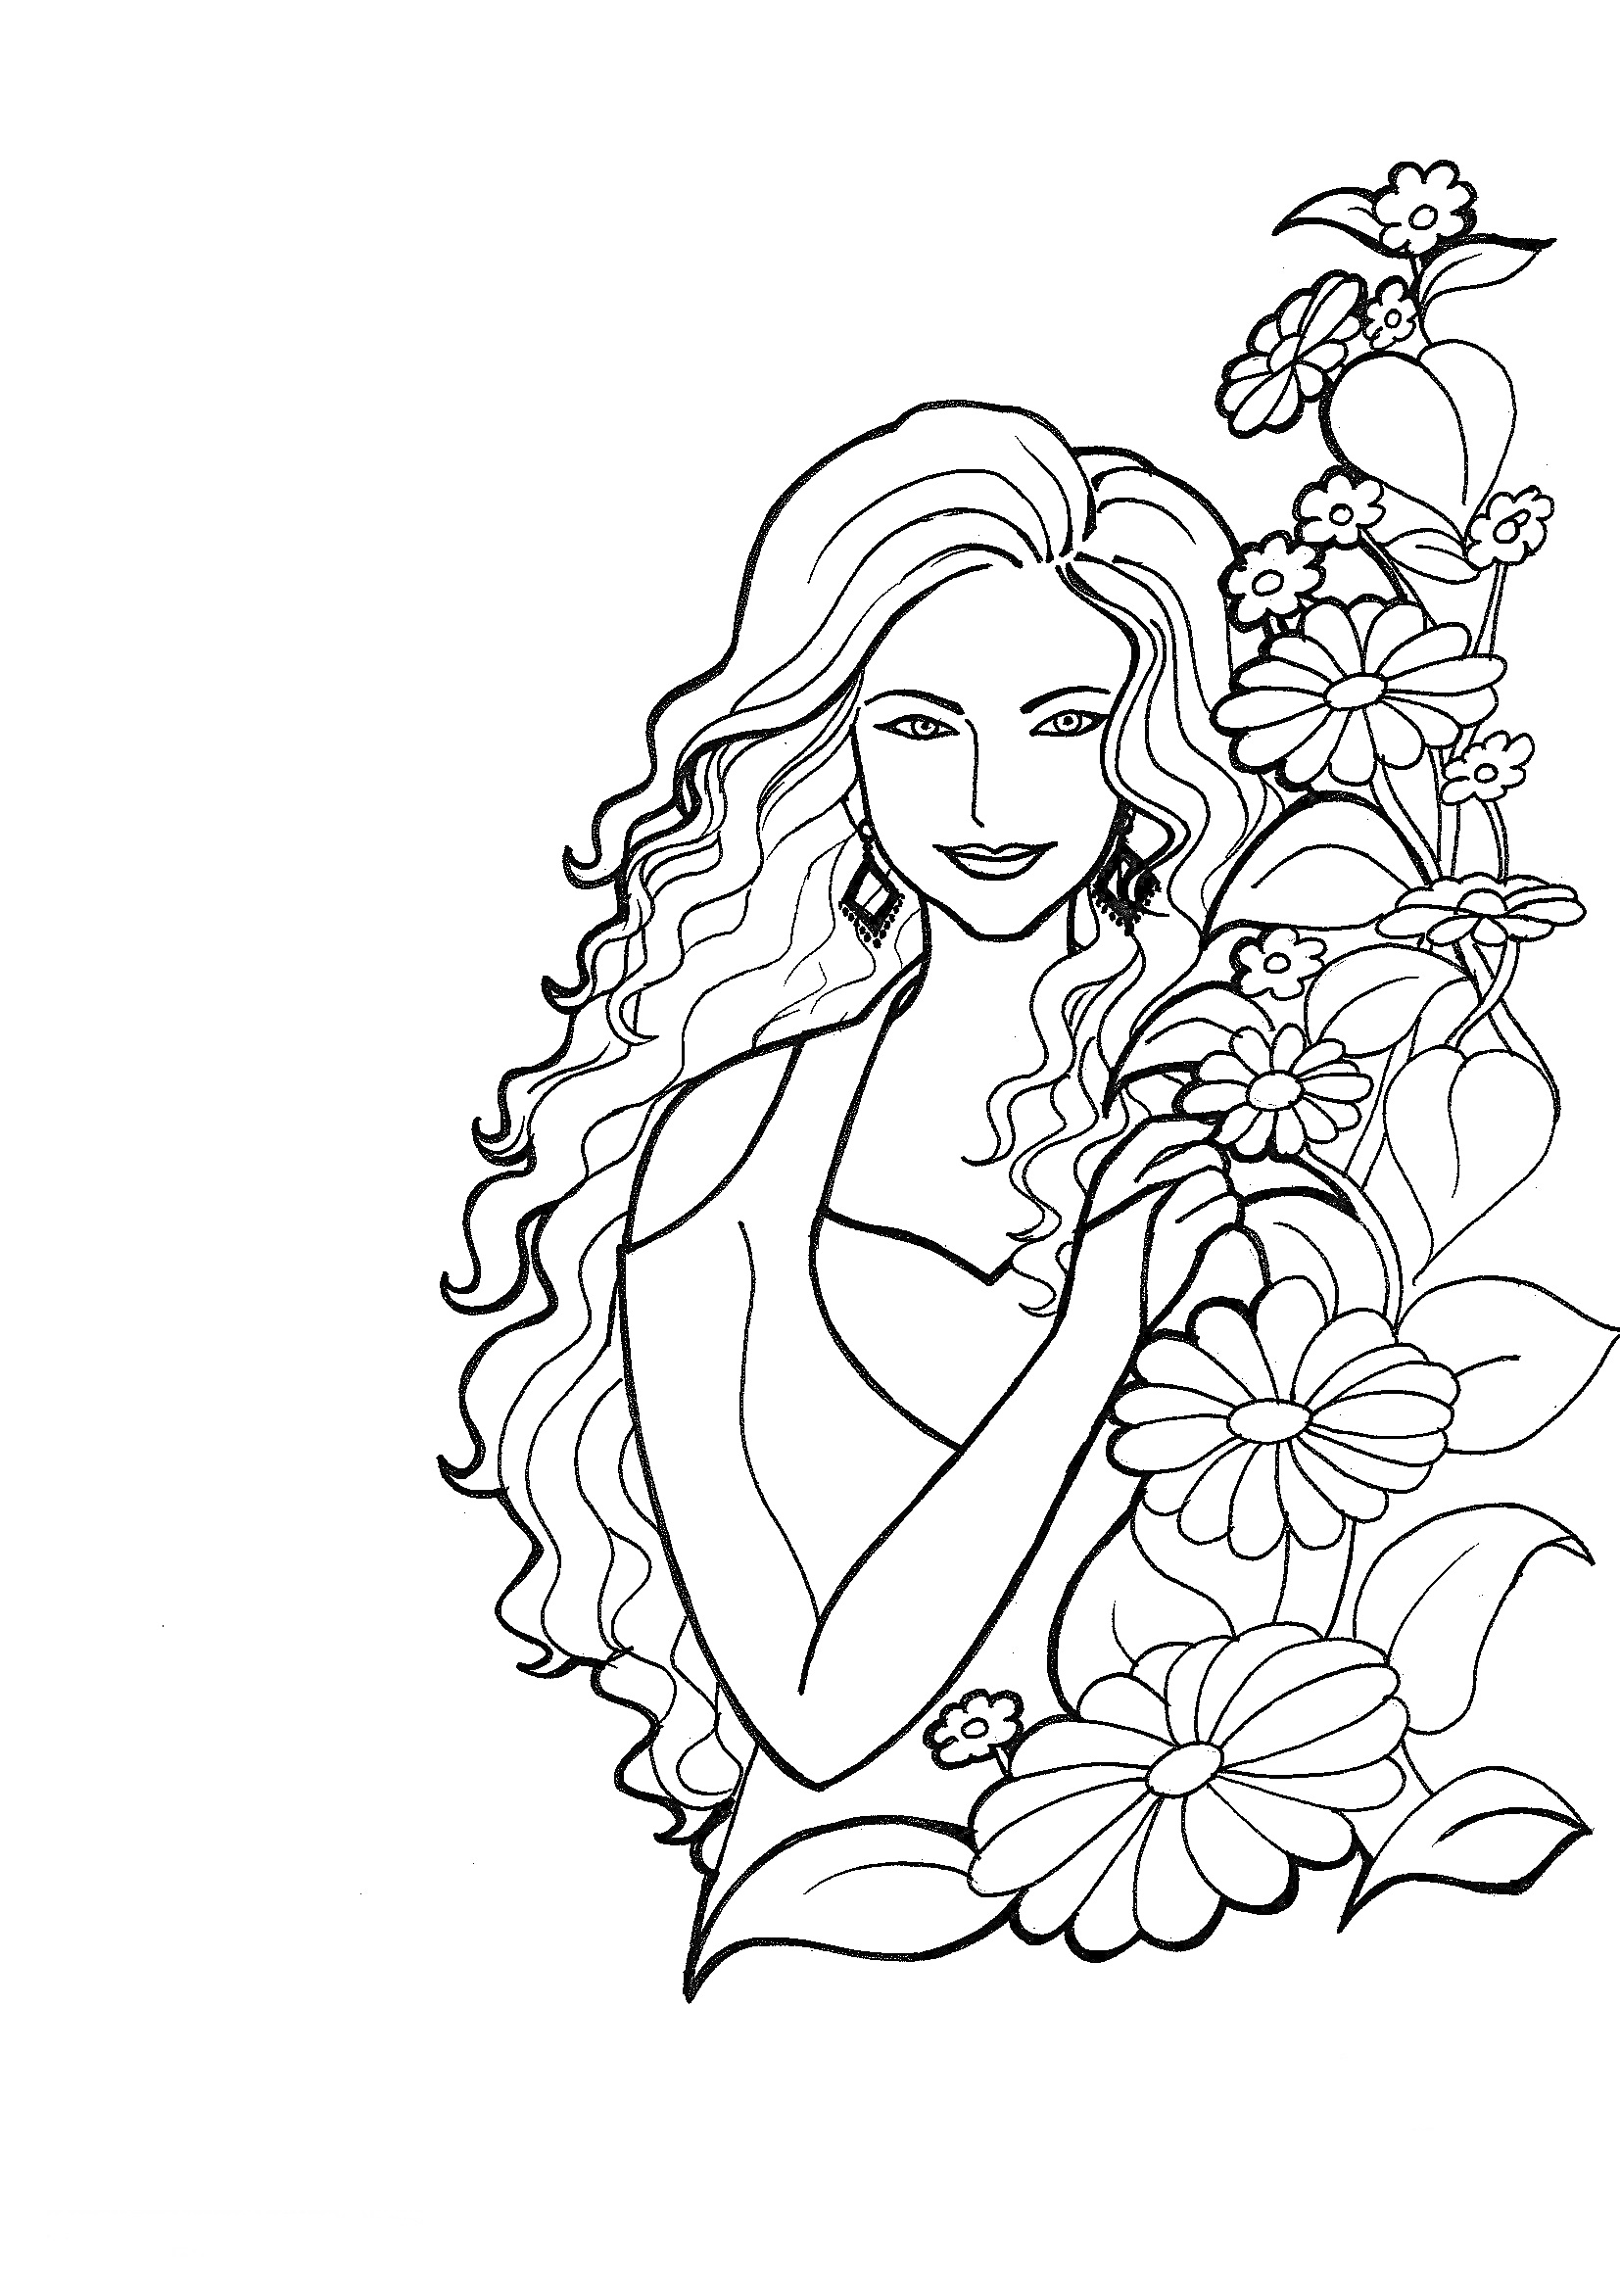 Женщина с длинными волосами и цветами, лицо улыбающейся женщины, волосы распущенные, цветы вокруг.